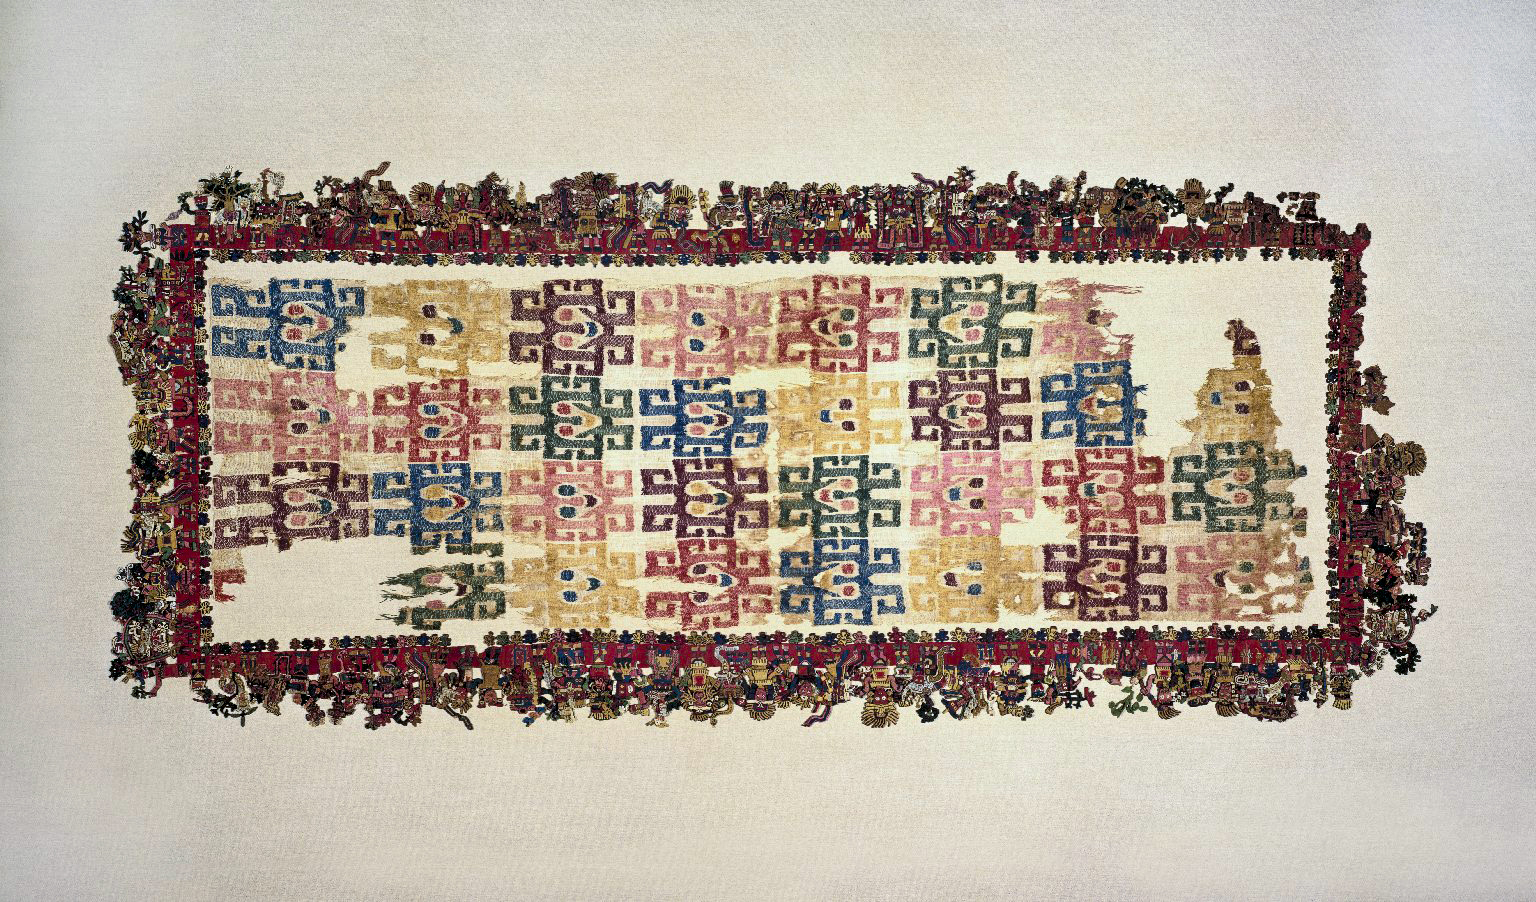 Ткань Паракас. Культура наска, 100-300 гг. н.э. Коллекция Brooklyn Museum.